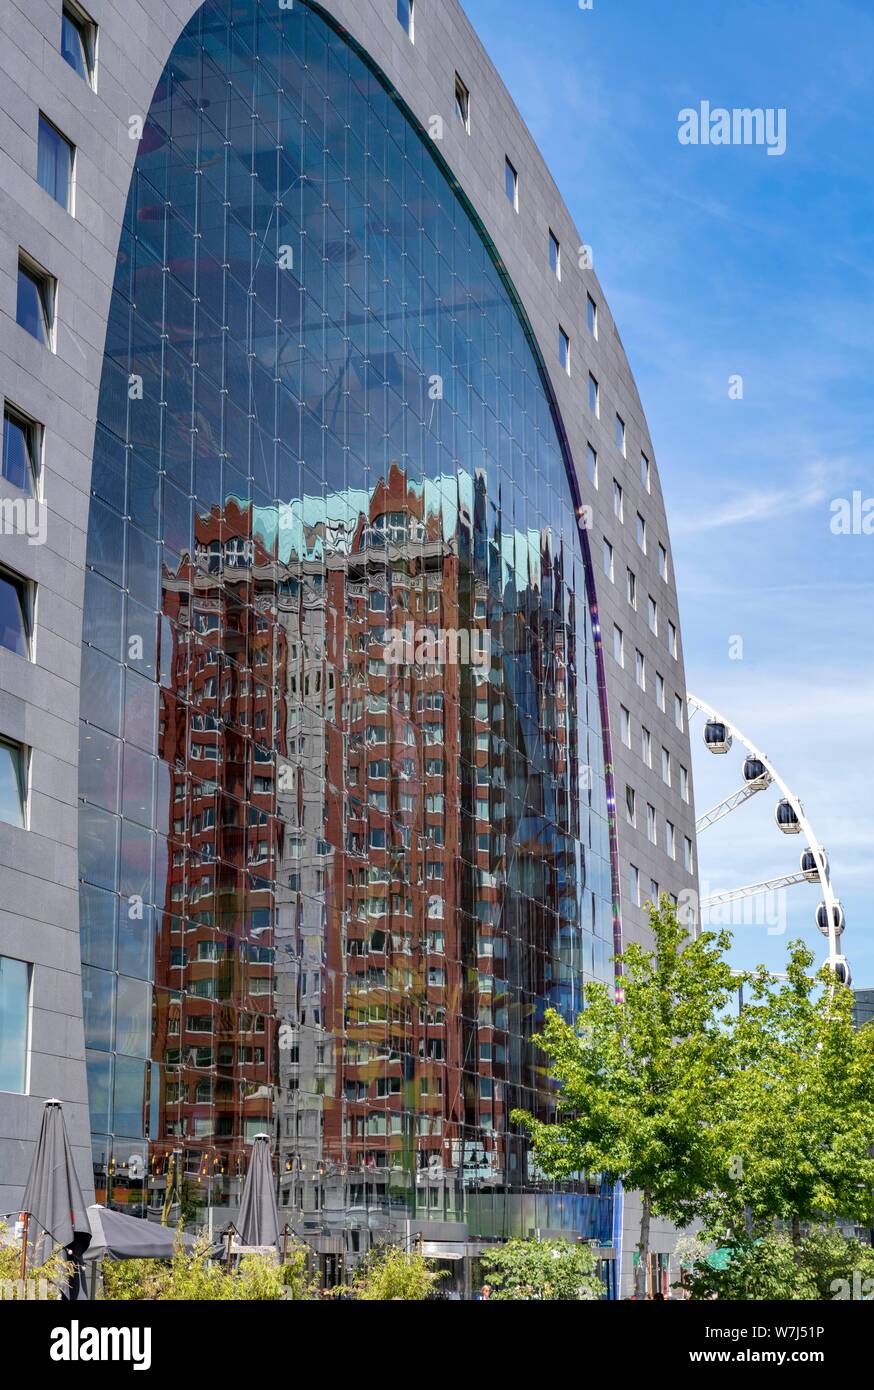 Statendam tour d'habitation reflète dans la façade en verre de la halle, Rotterdam, Pays-Bas Banque D'Images